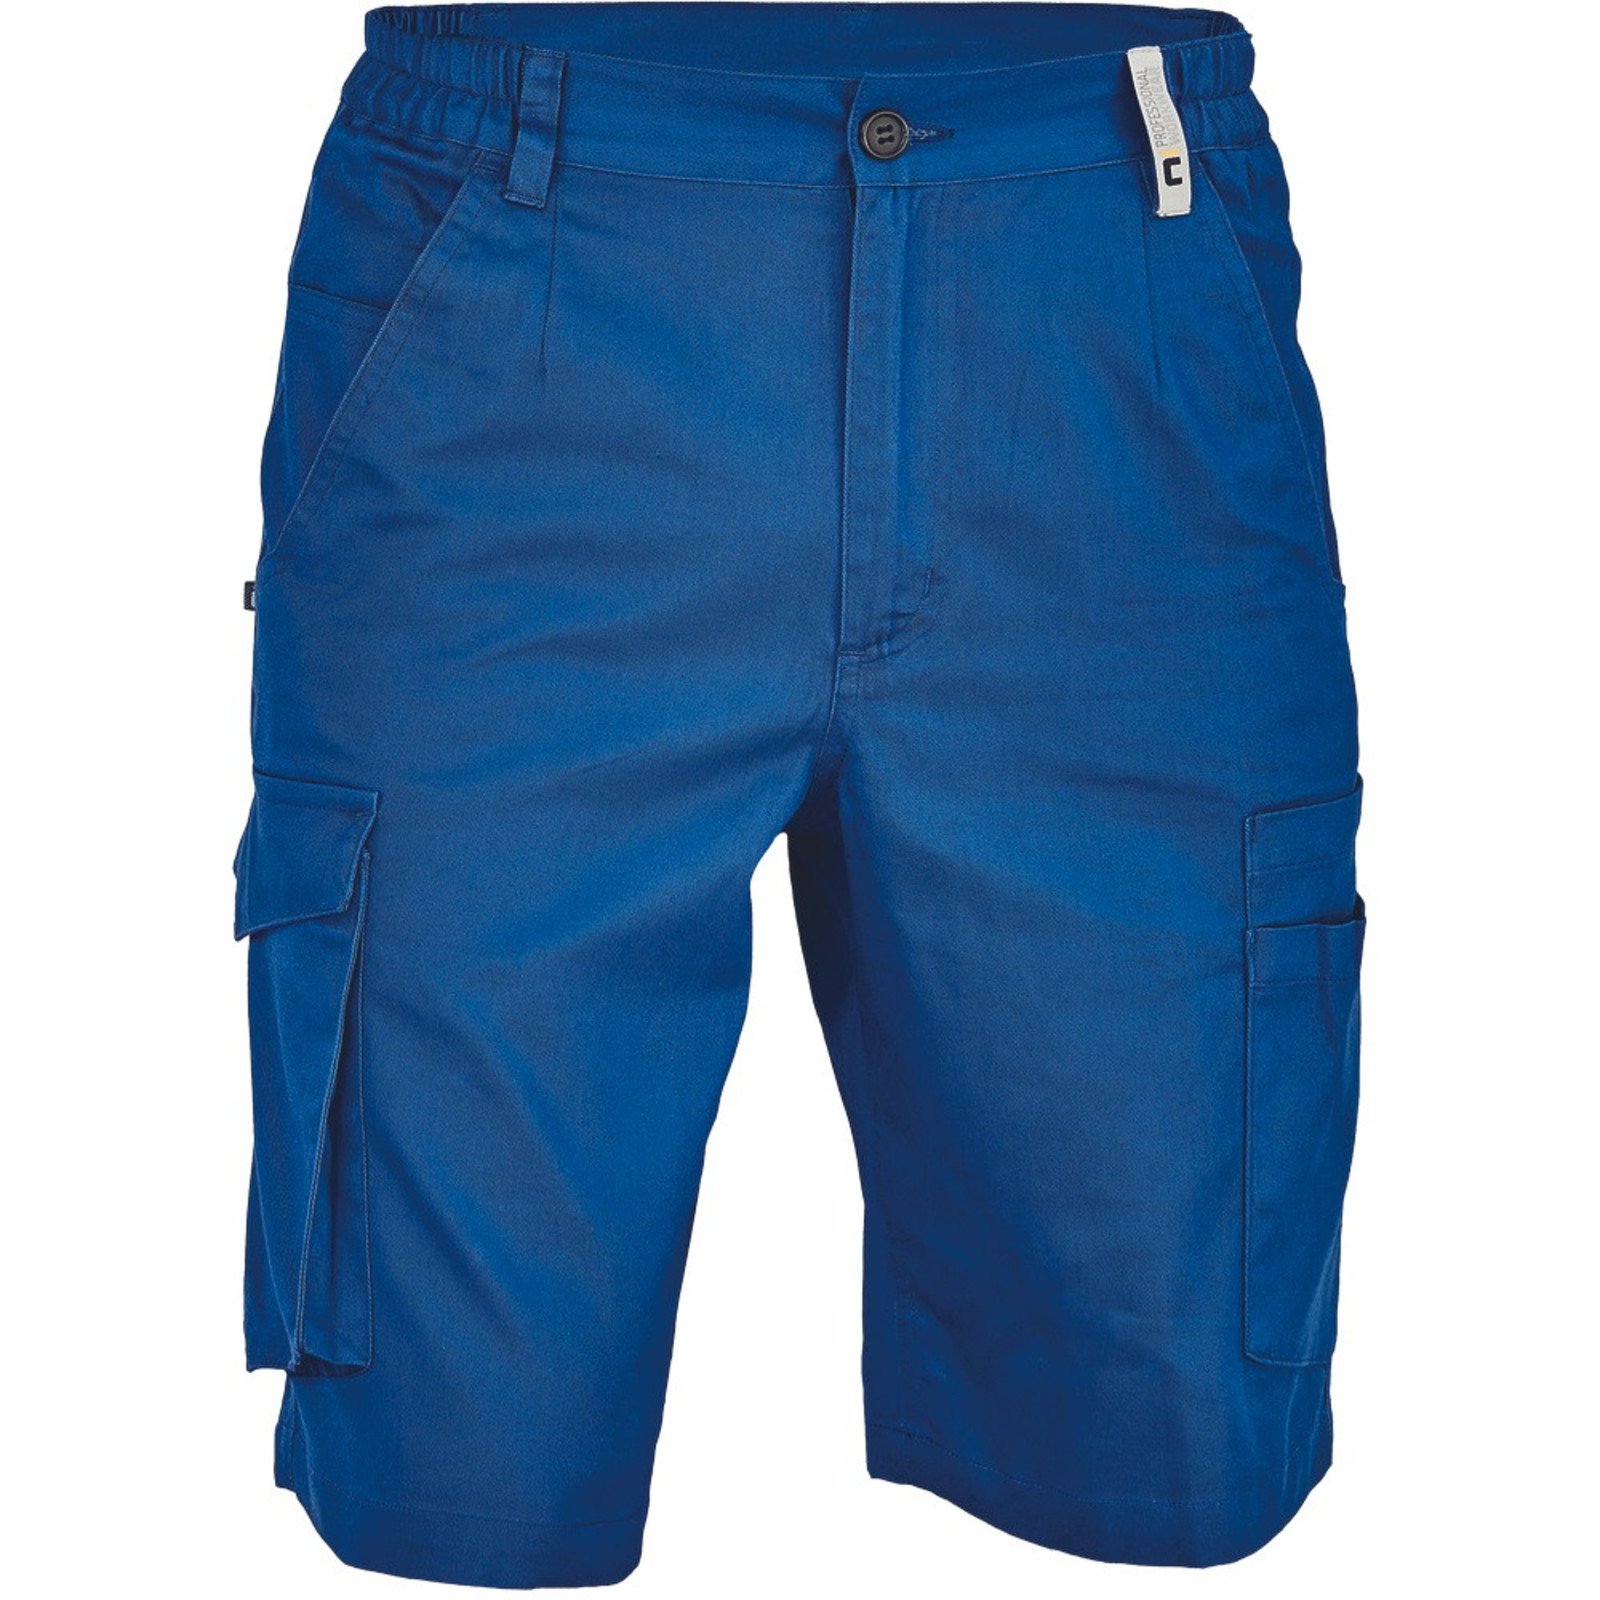 Pánske pracovné šortky Cerva Ciudades Basic Gijon - veľkosť: 60, farba: royal blue